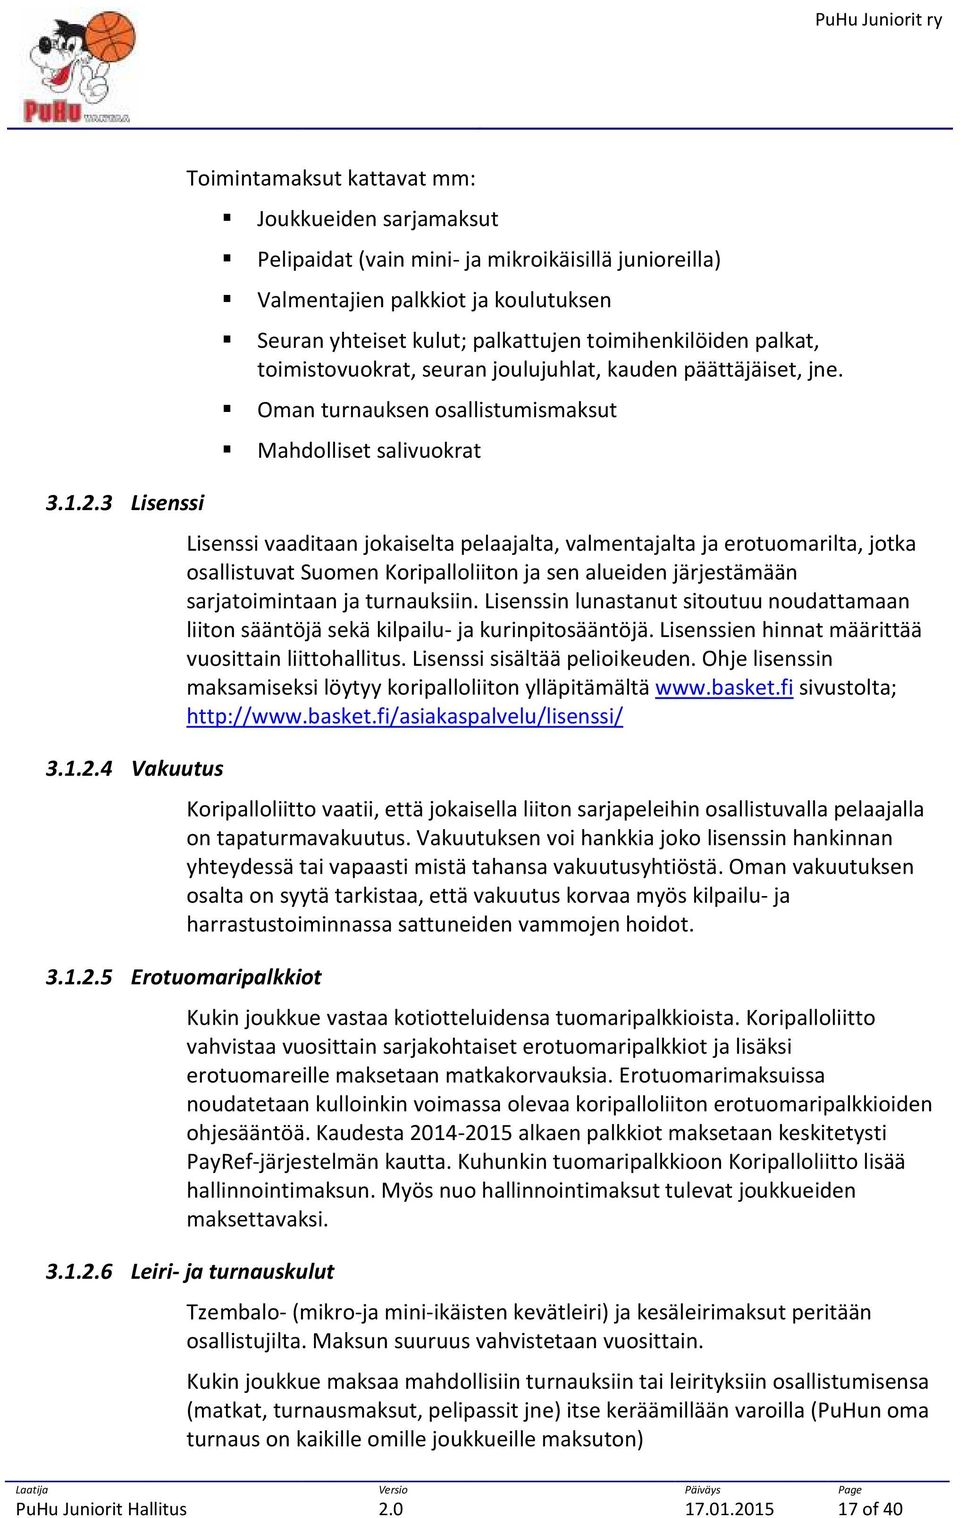 3 Lisenssi Lisenssi vaaditaan jokaiselta pelaajalta, valmentajalta ja erotuomarilta, jotka osallistuvat Suomen Koripalloliiton ja sen alueiden järjestämään sarjatoimintaan ja turnauksiin.